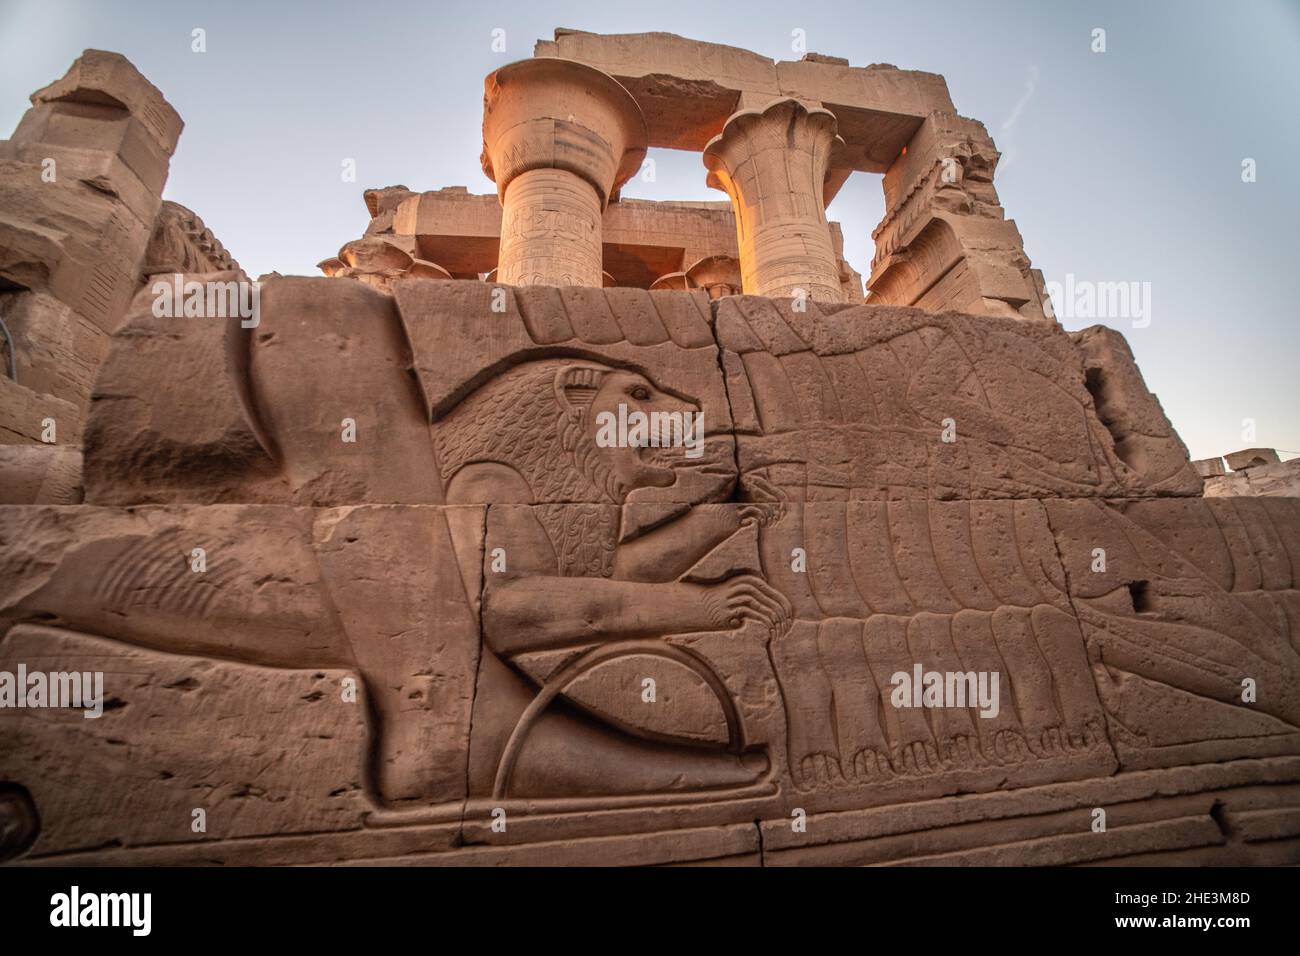 Une sculpture ancienne dans les ruines du temple de Kom Ombo en Égypte dépeint un lion piquant une main. Banque D'Images